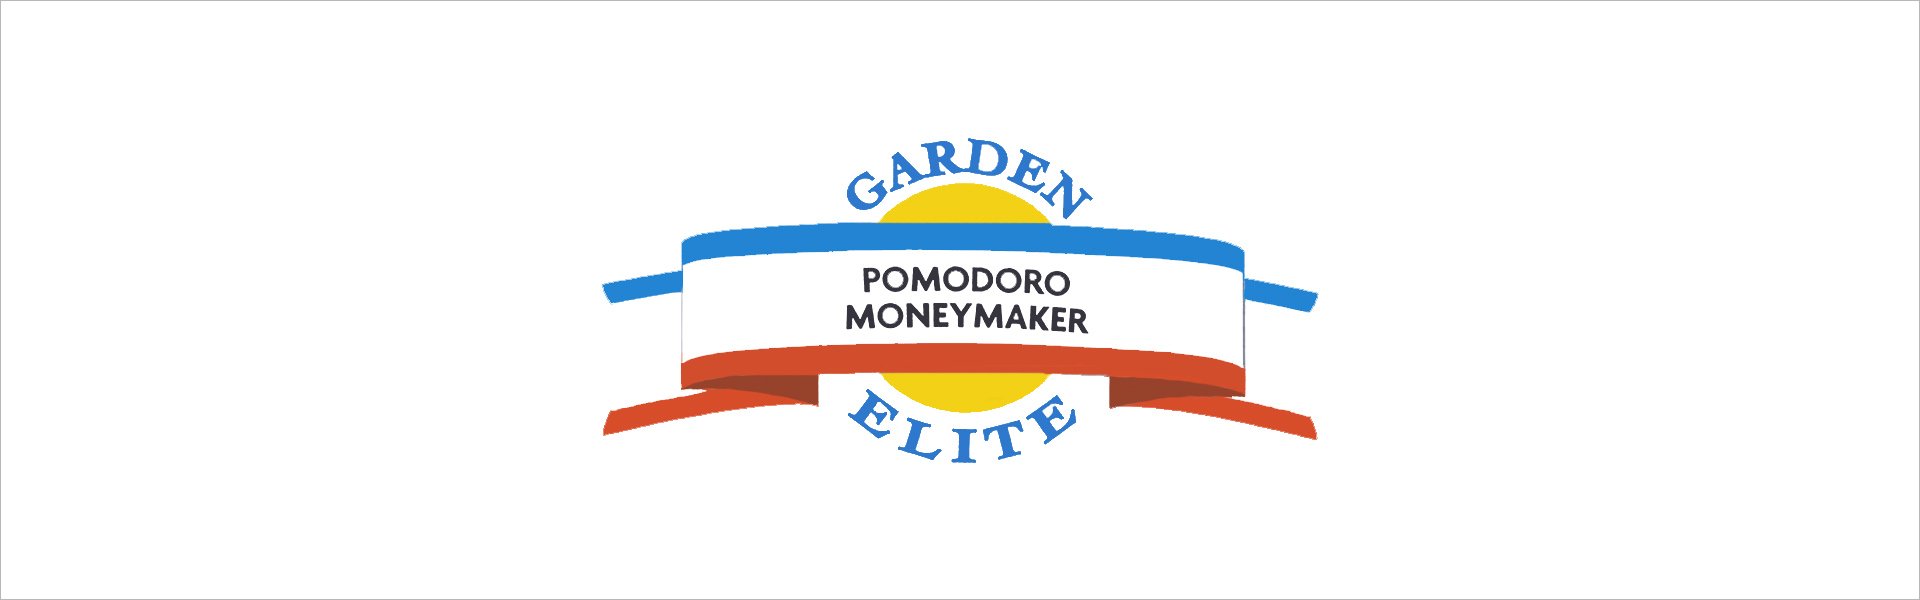 Portulaka Garden Elite Garden Elite